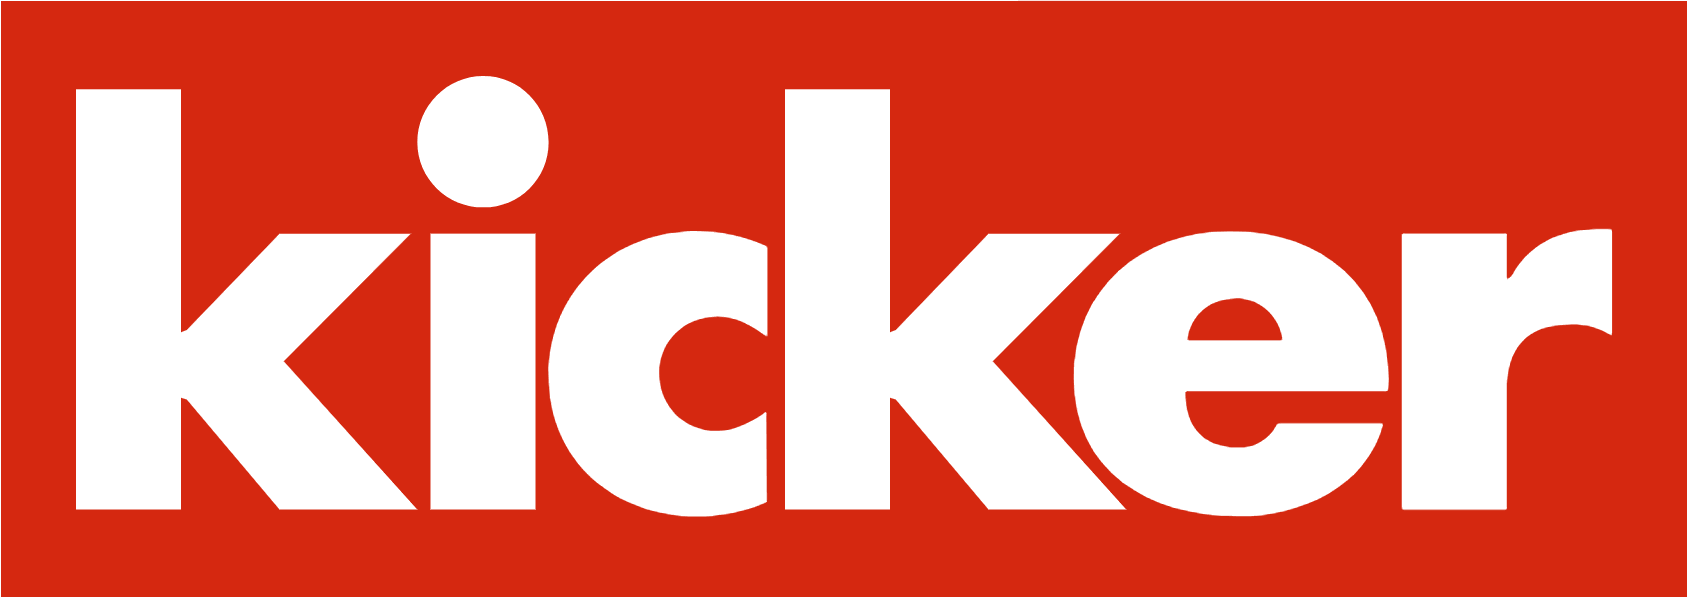 kicker.de ist das Online-Angebot zum bekannten Fußballmagazin